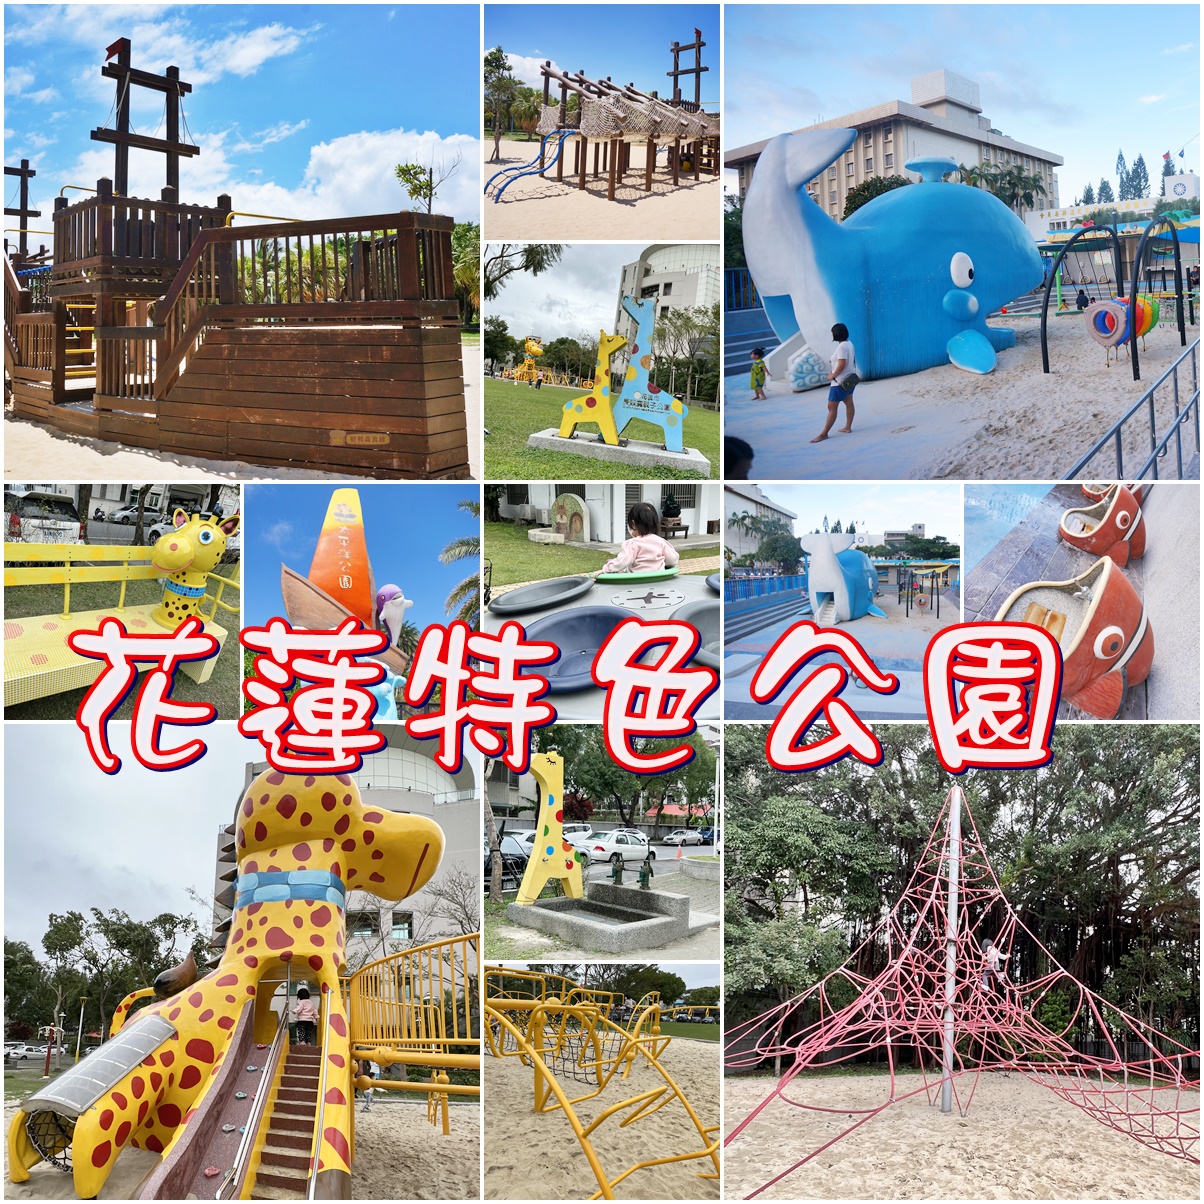 免費親子景點,公園,大阪懶人包,沙坑,特色公園,磨石子滑梯,花蓮特色公園,花蓮親子景點